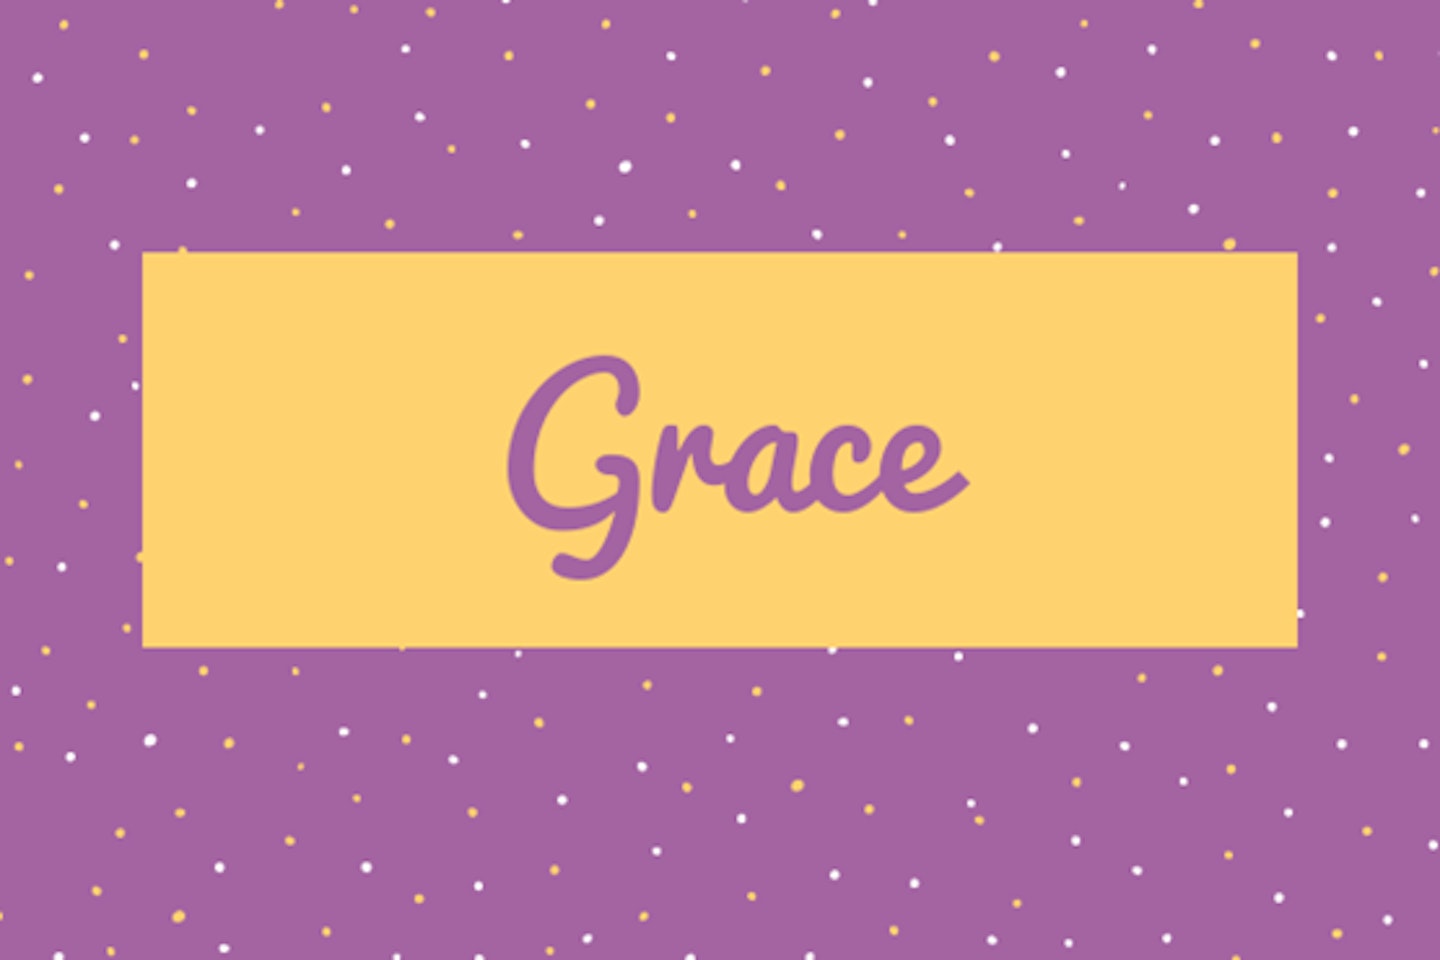 31) Grace